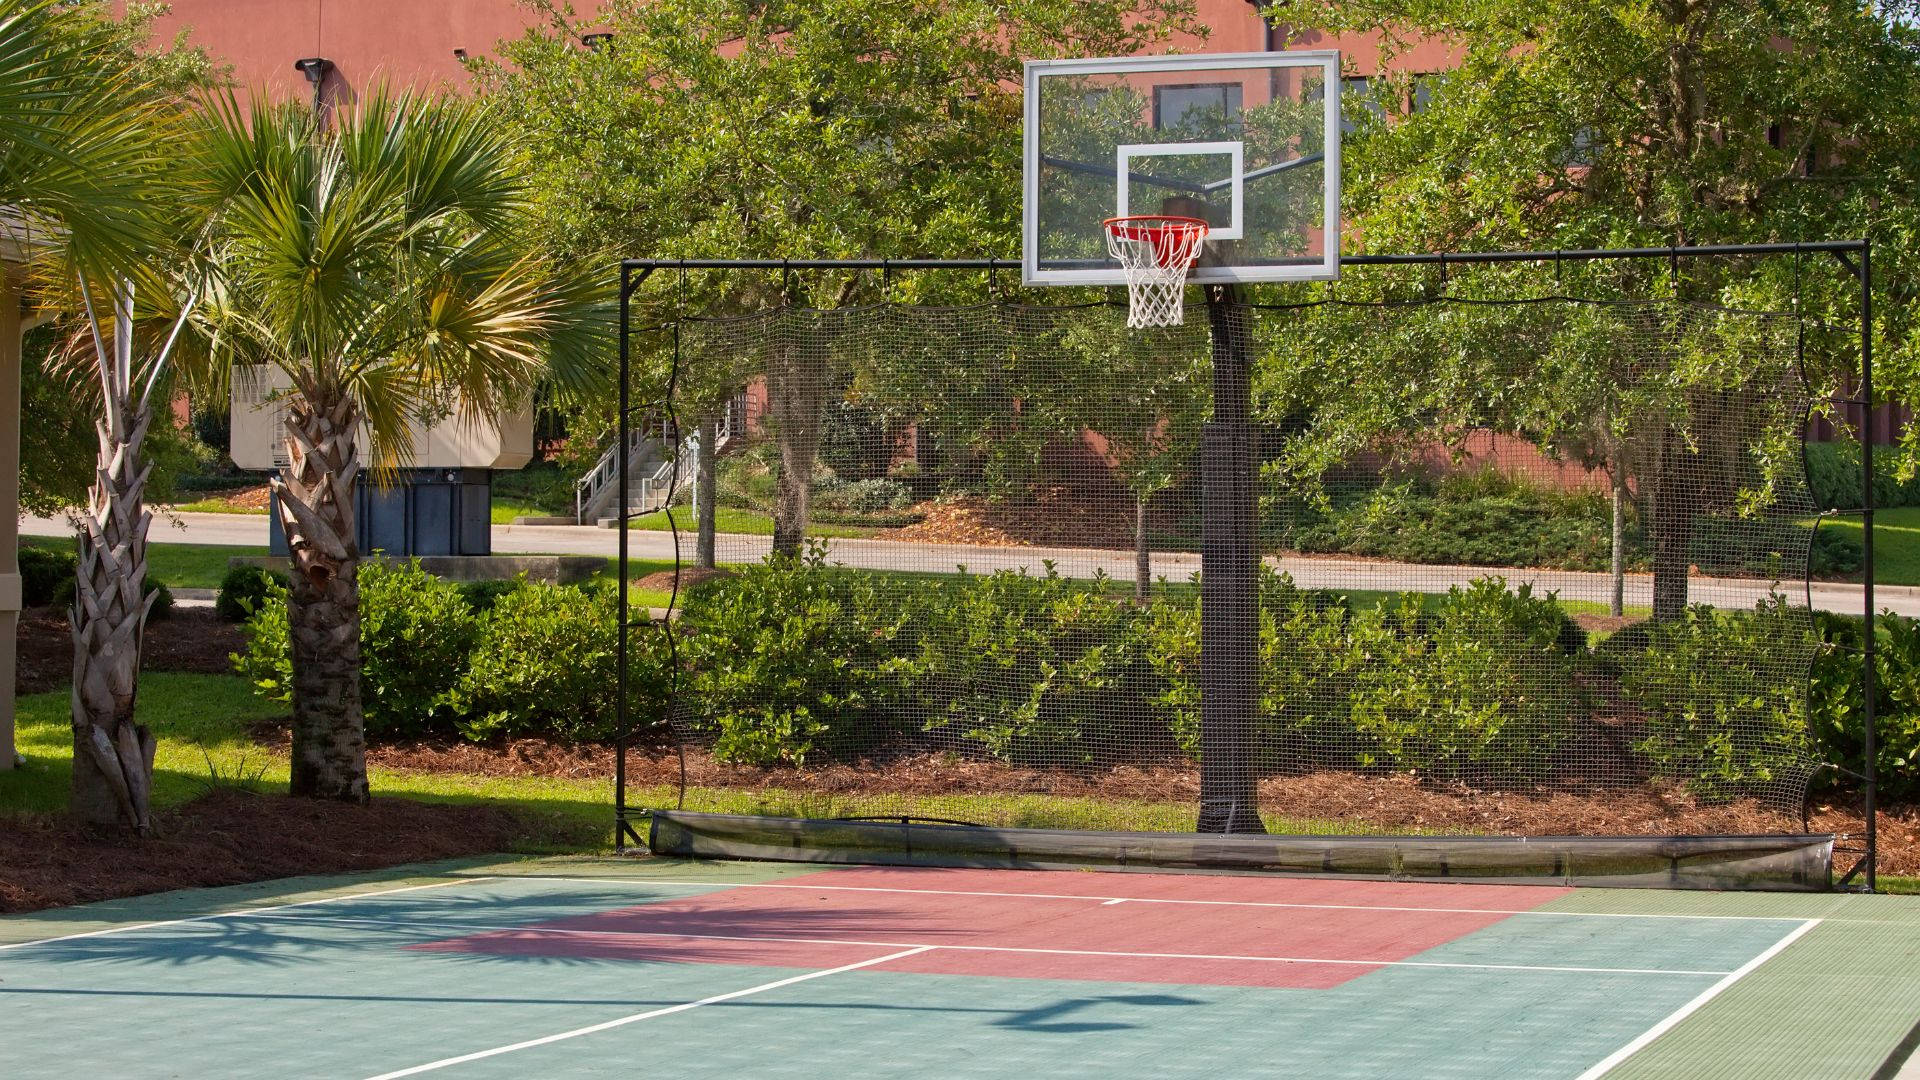 Uptown Outdoor basketball Banen. Wallpaper